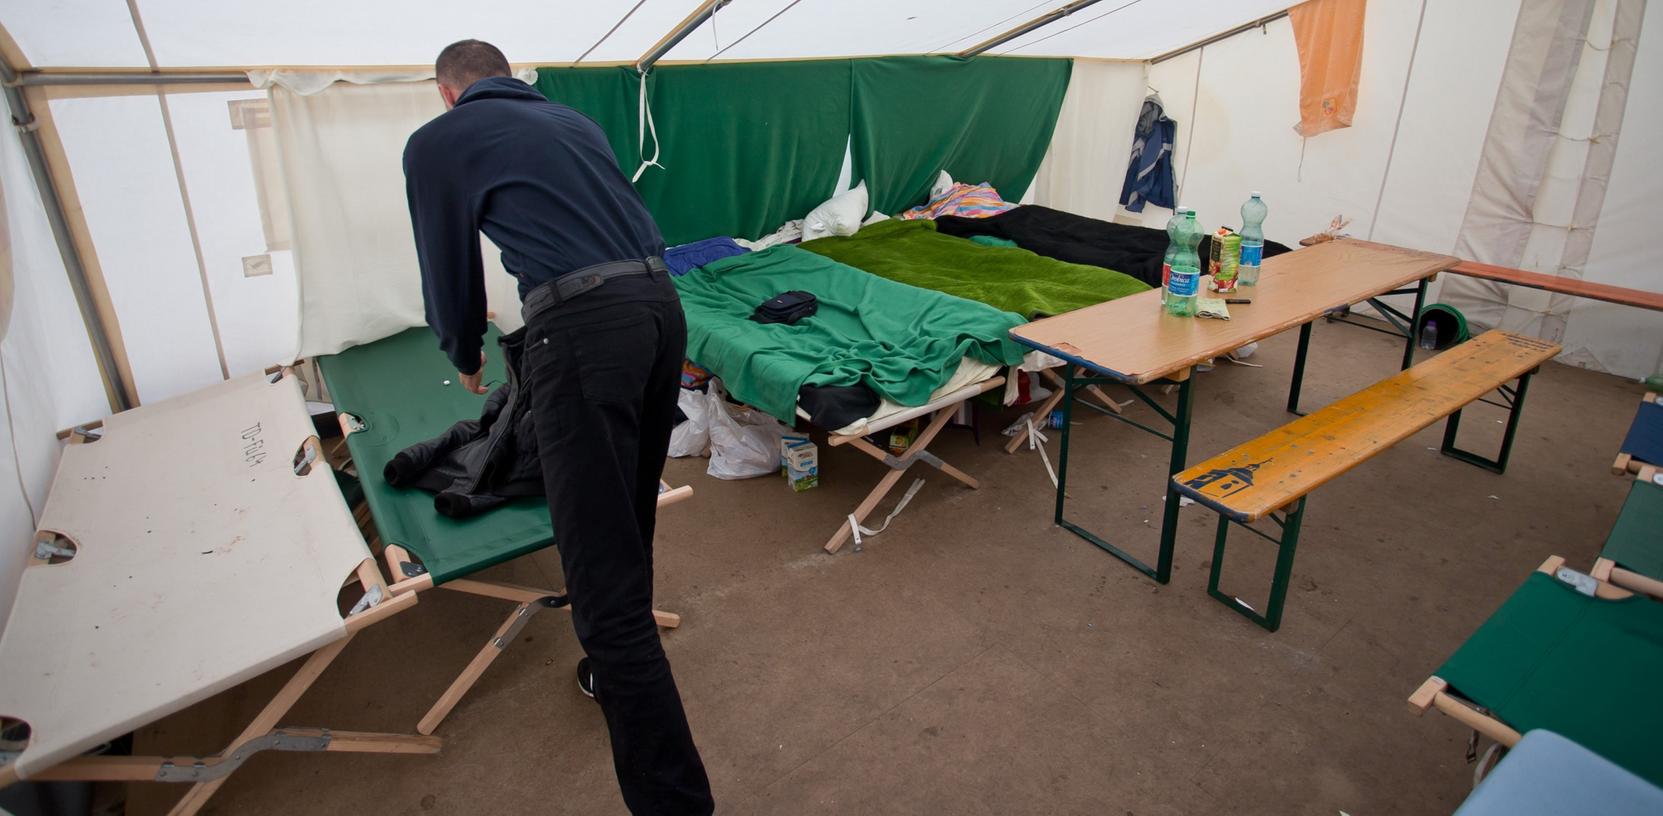 Ein Asylbewerber steht am 07.11.2012 in der Zentralen Aufnahmeeinrichtung für Asylbewerber (ZAE) in Zirndorf in einem Zelt, das als Notunterkunft dient. Bald sollen statt der Zelte Baracken auf dem ehemaligen Kasernenhof errichtet werden.